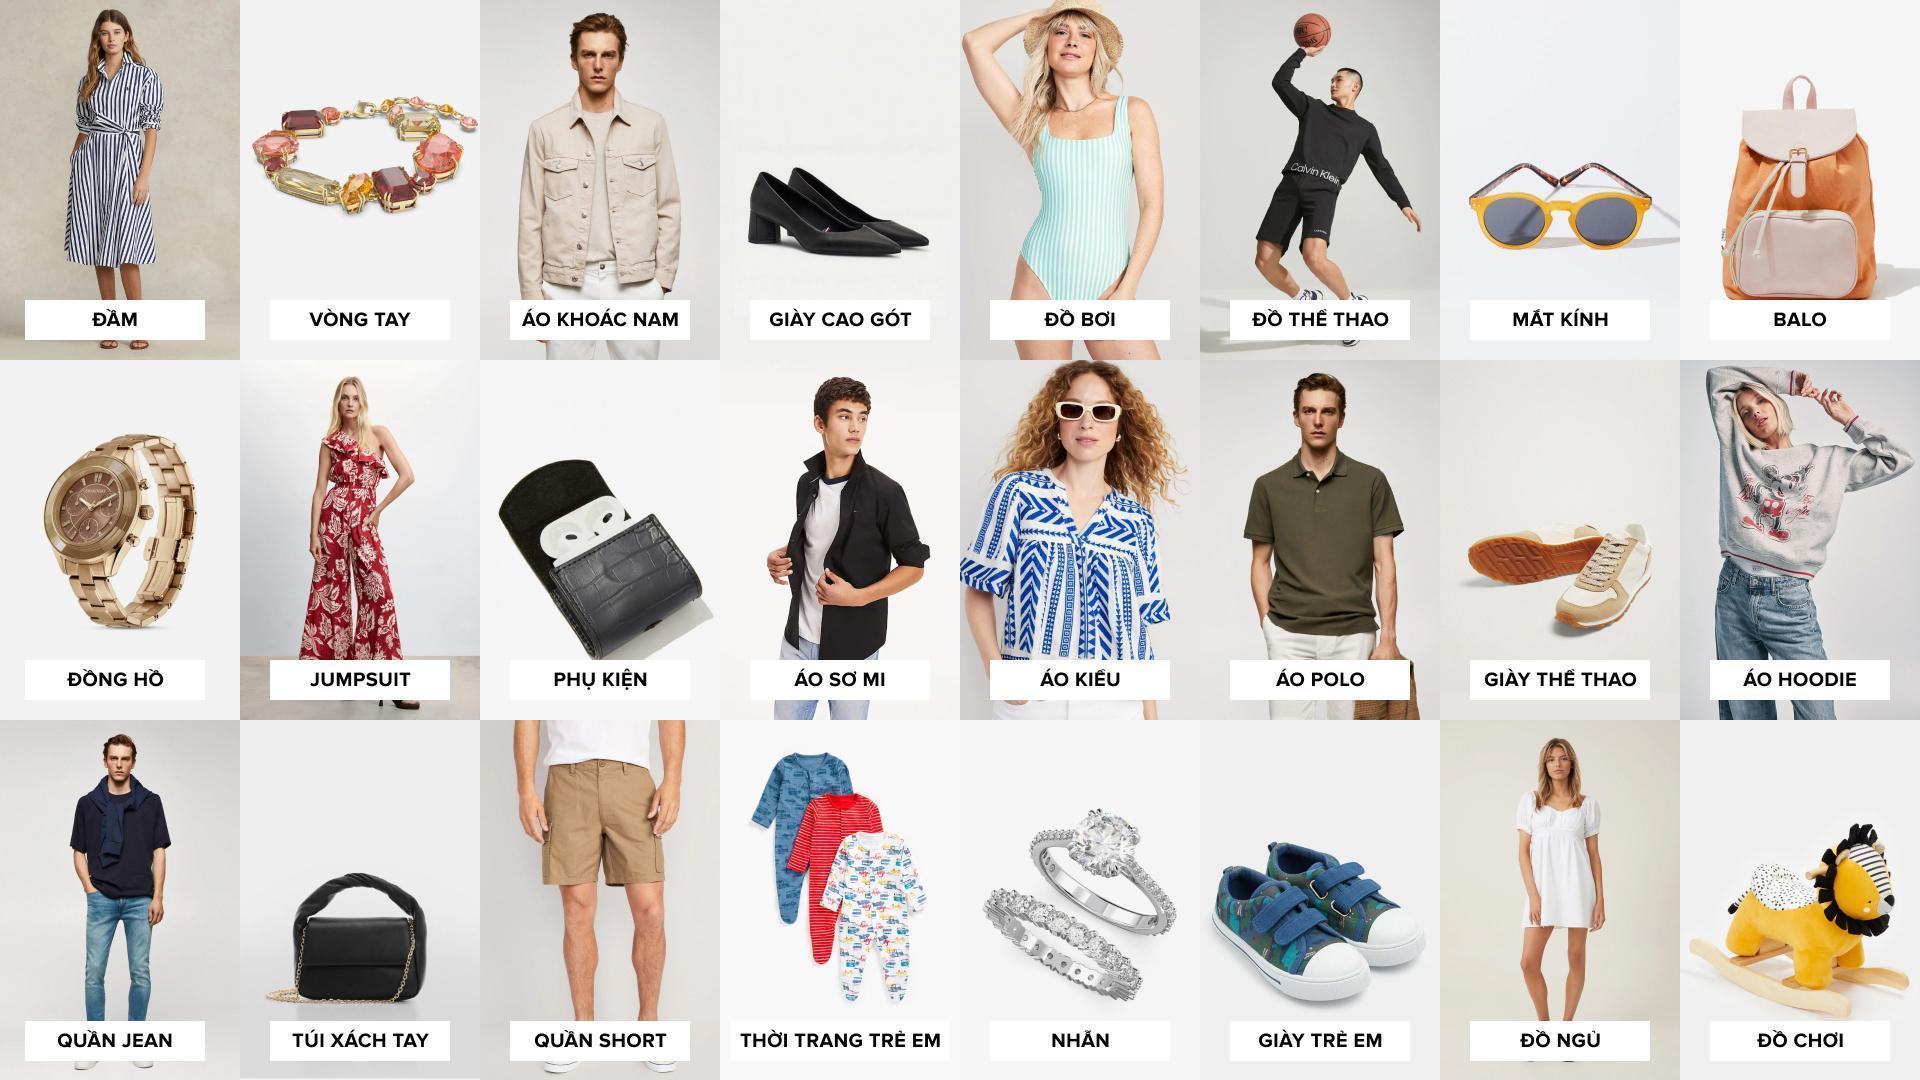 ACFC khiến giới mộ điệu thời trang nức lòng với ứng dụng mua sắm hàng hiệu online - Ảnh 2.